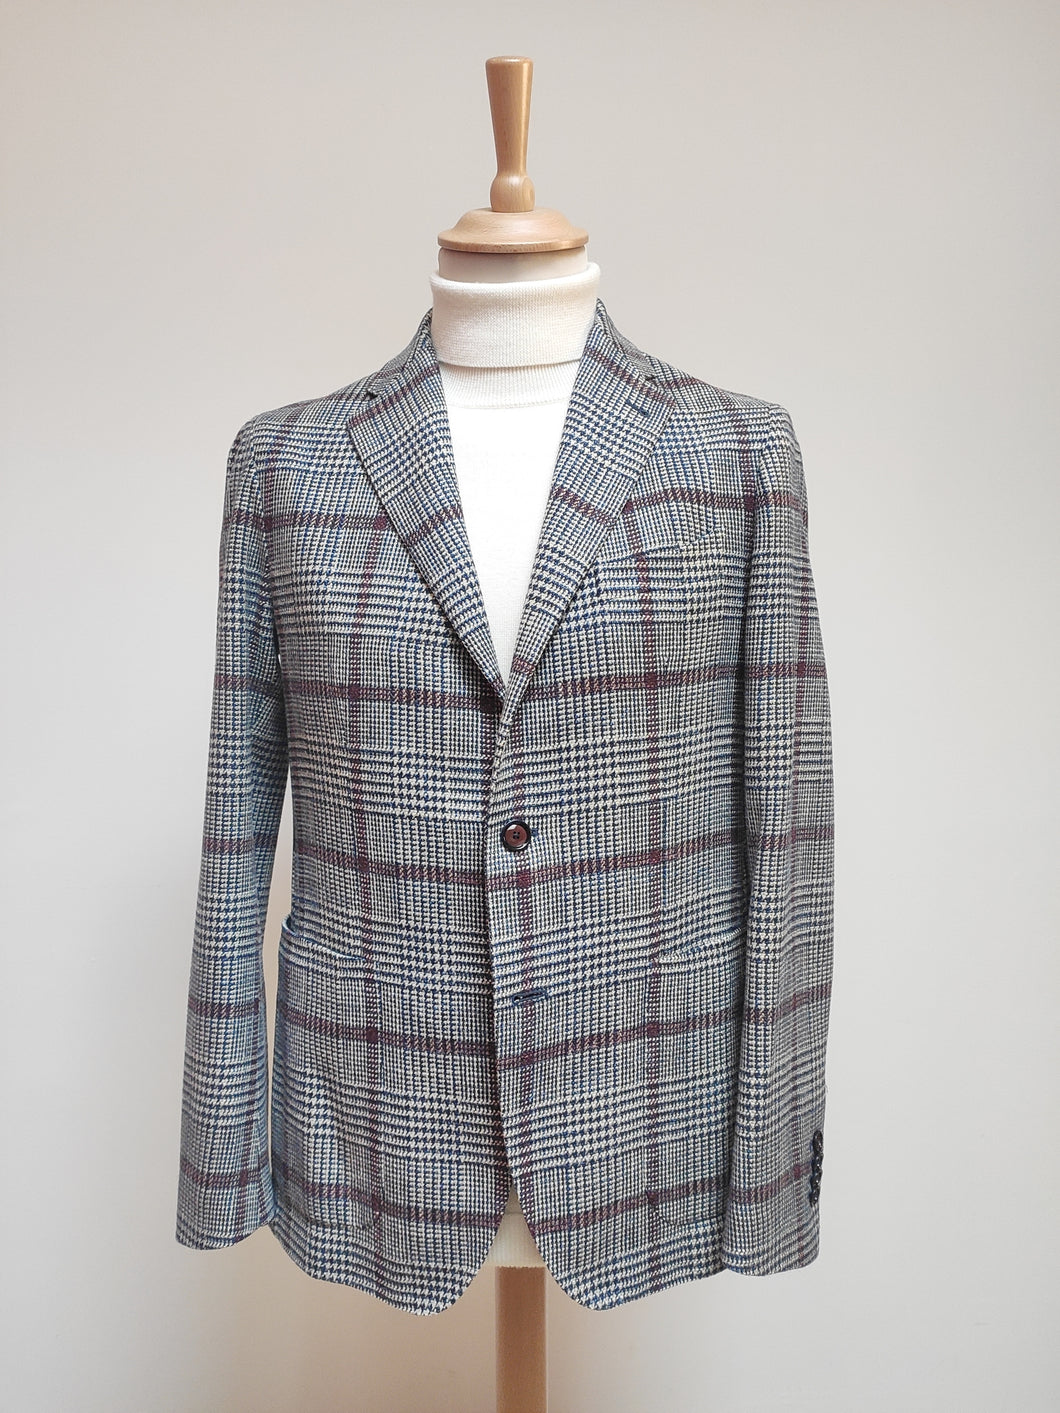 Tagliatore blazer à carreaux en laine et soie Vitale Barberis collection vintage 48 R